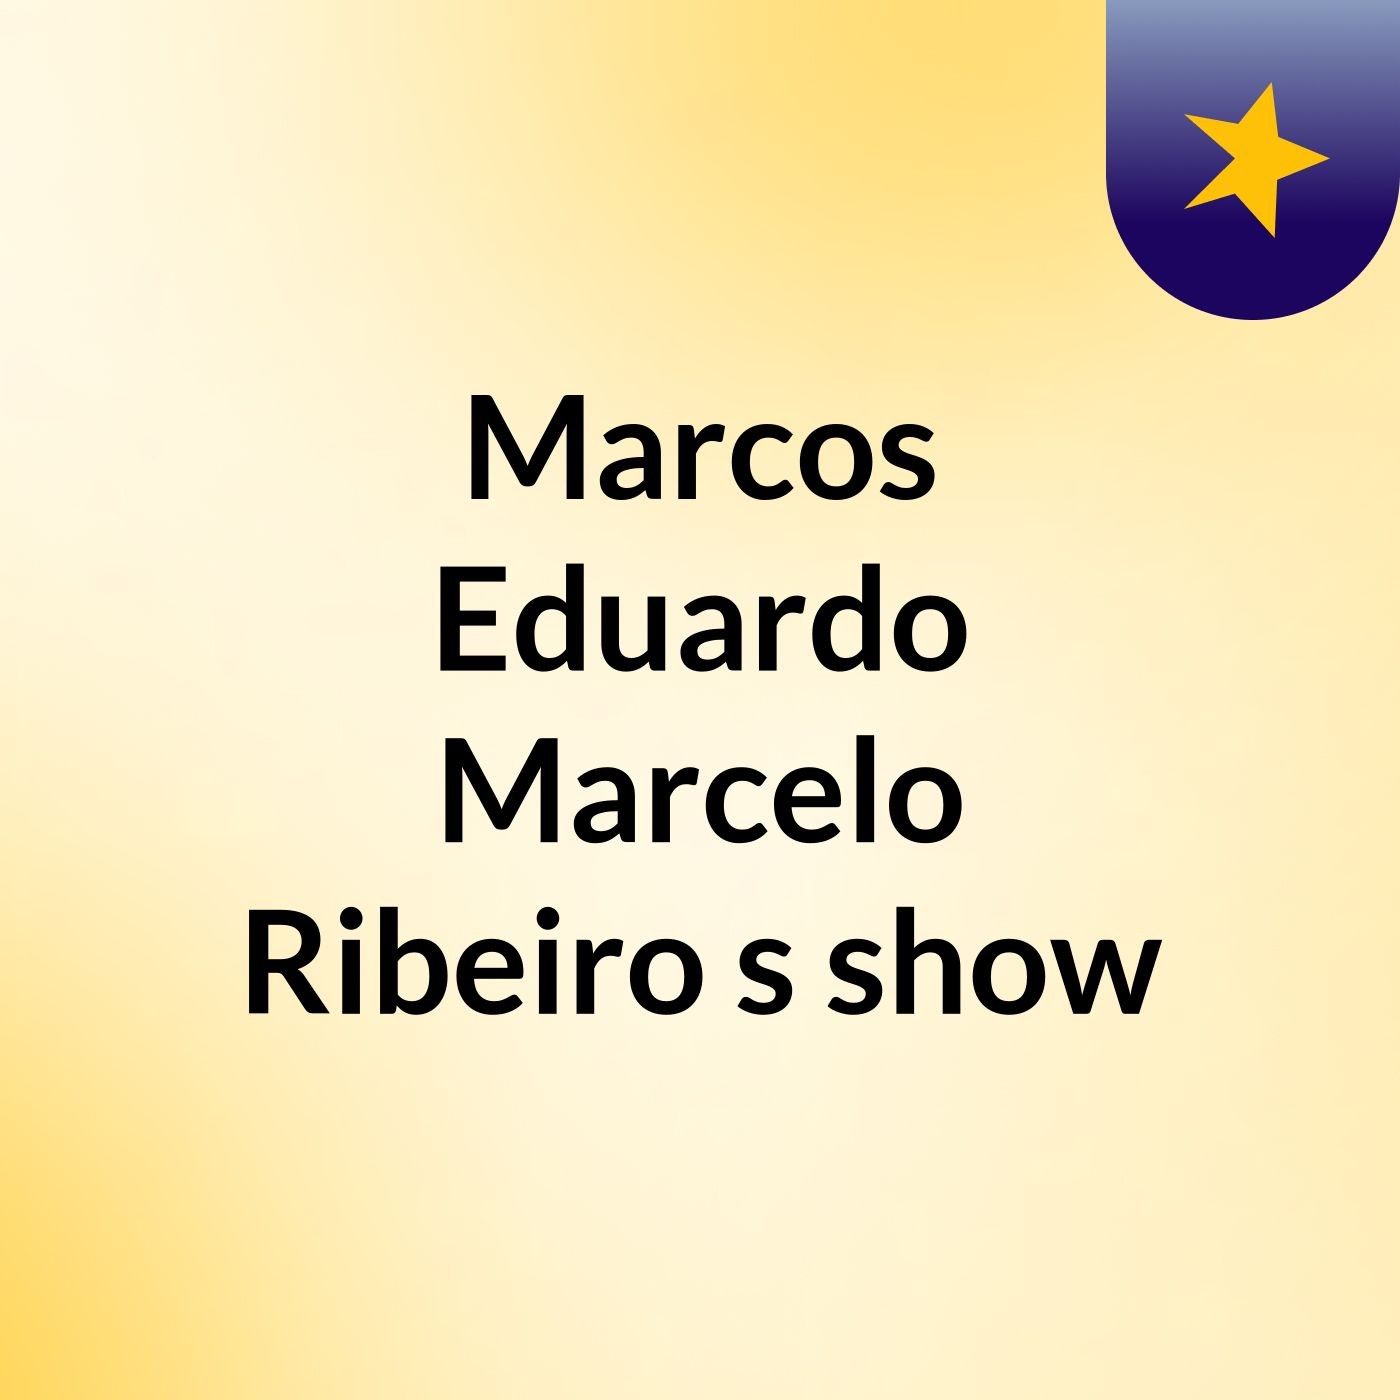 Marcos Eduardo Marcelo Ribeiro's show